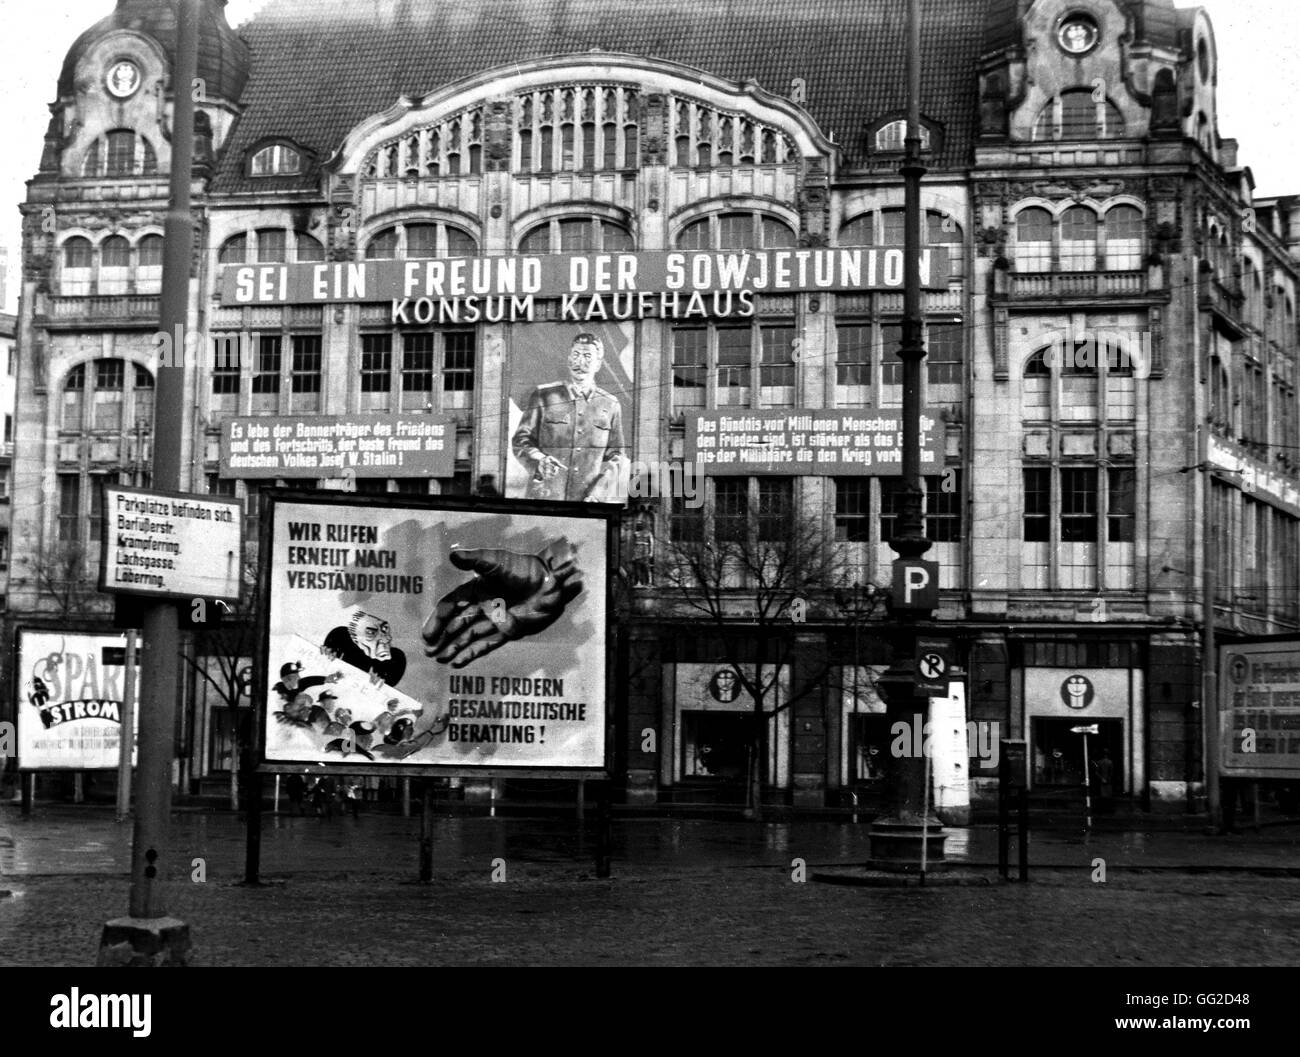 Berlín oriental: propaganda en la zona soviética c.1950 La República Democrática Alemana (RDA) Foto de stock